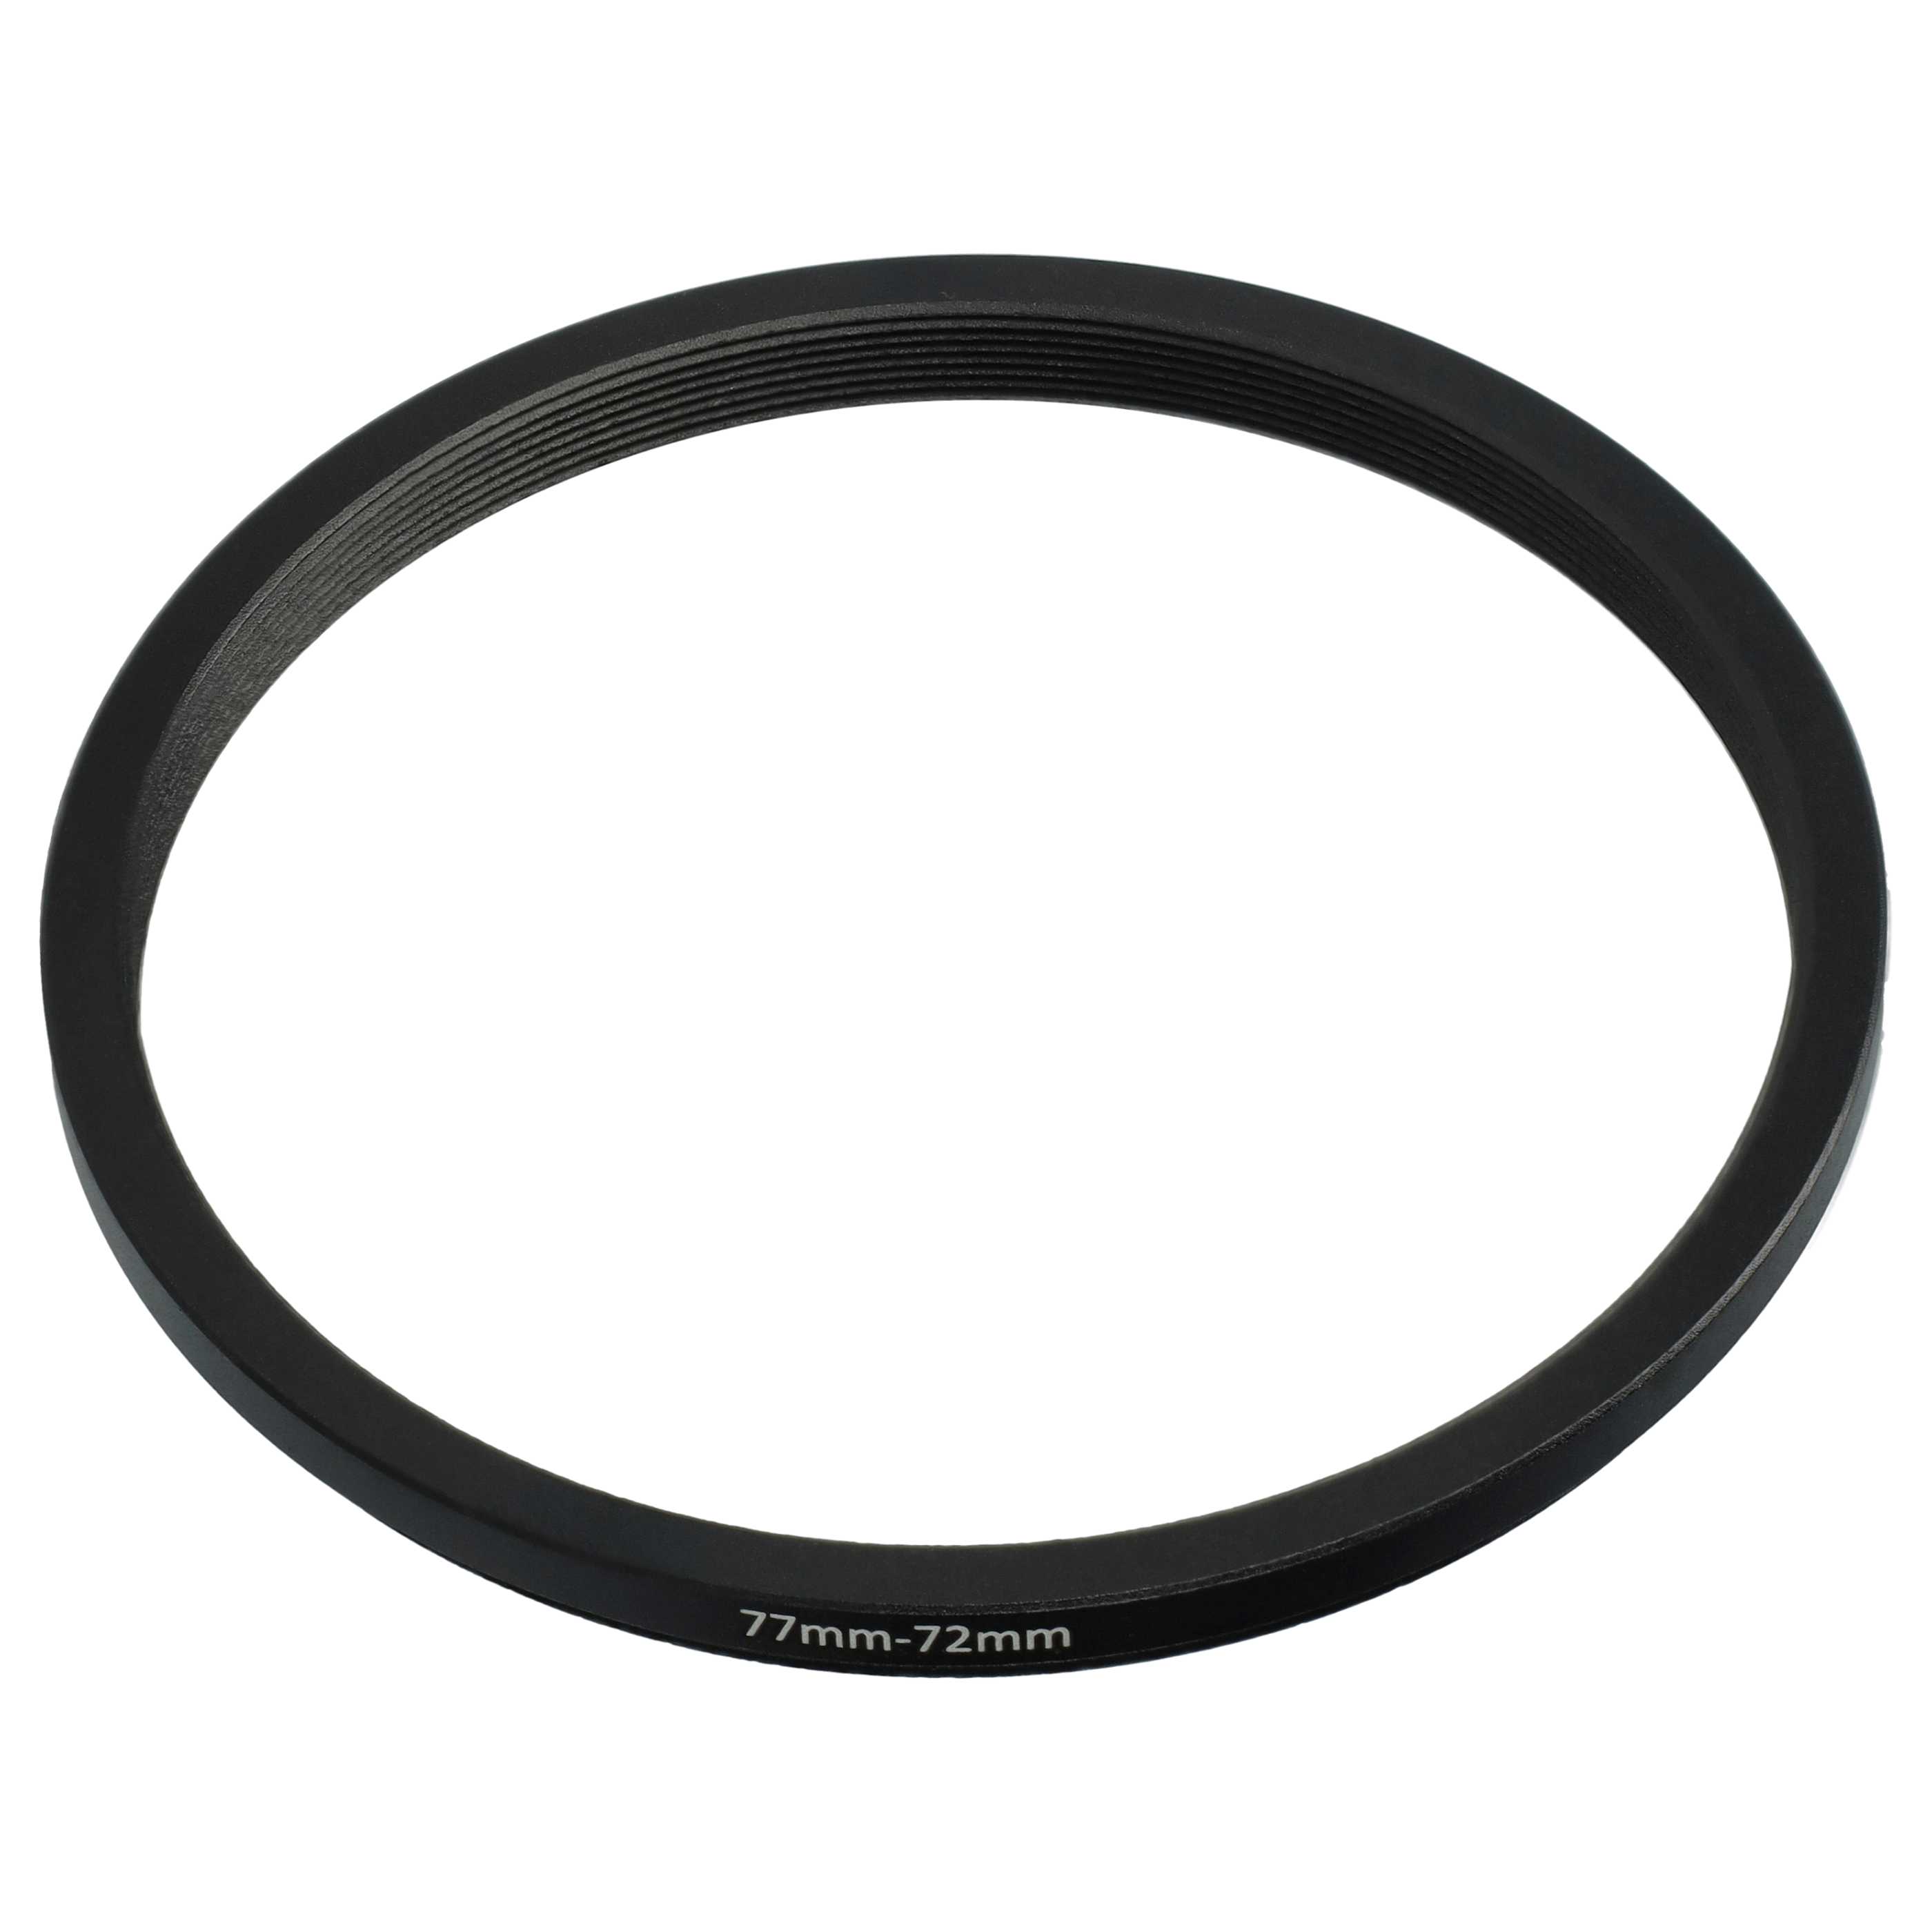 Anello adattatore step-down da 77 mm a 72 mm per obiettivo fotocamera - Adattatore filtro, metallo, nero